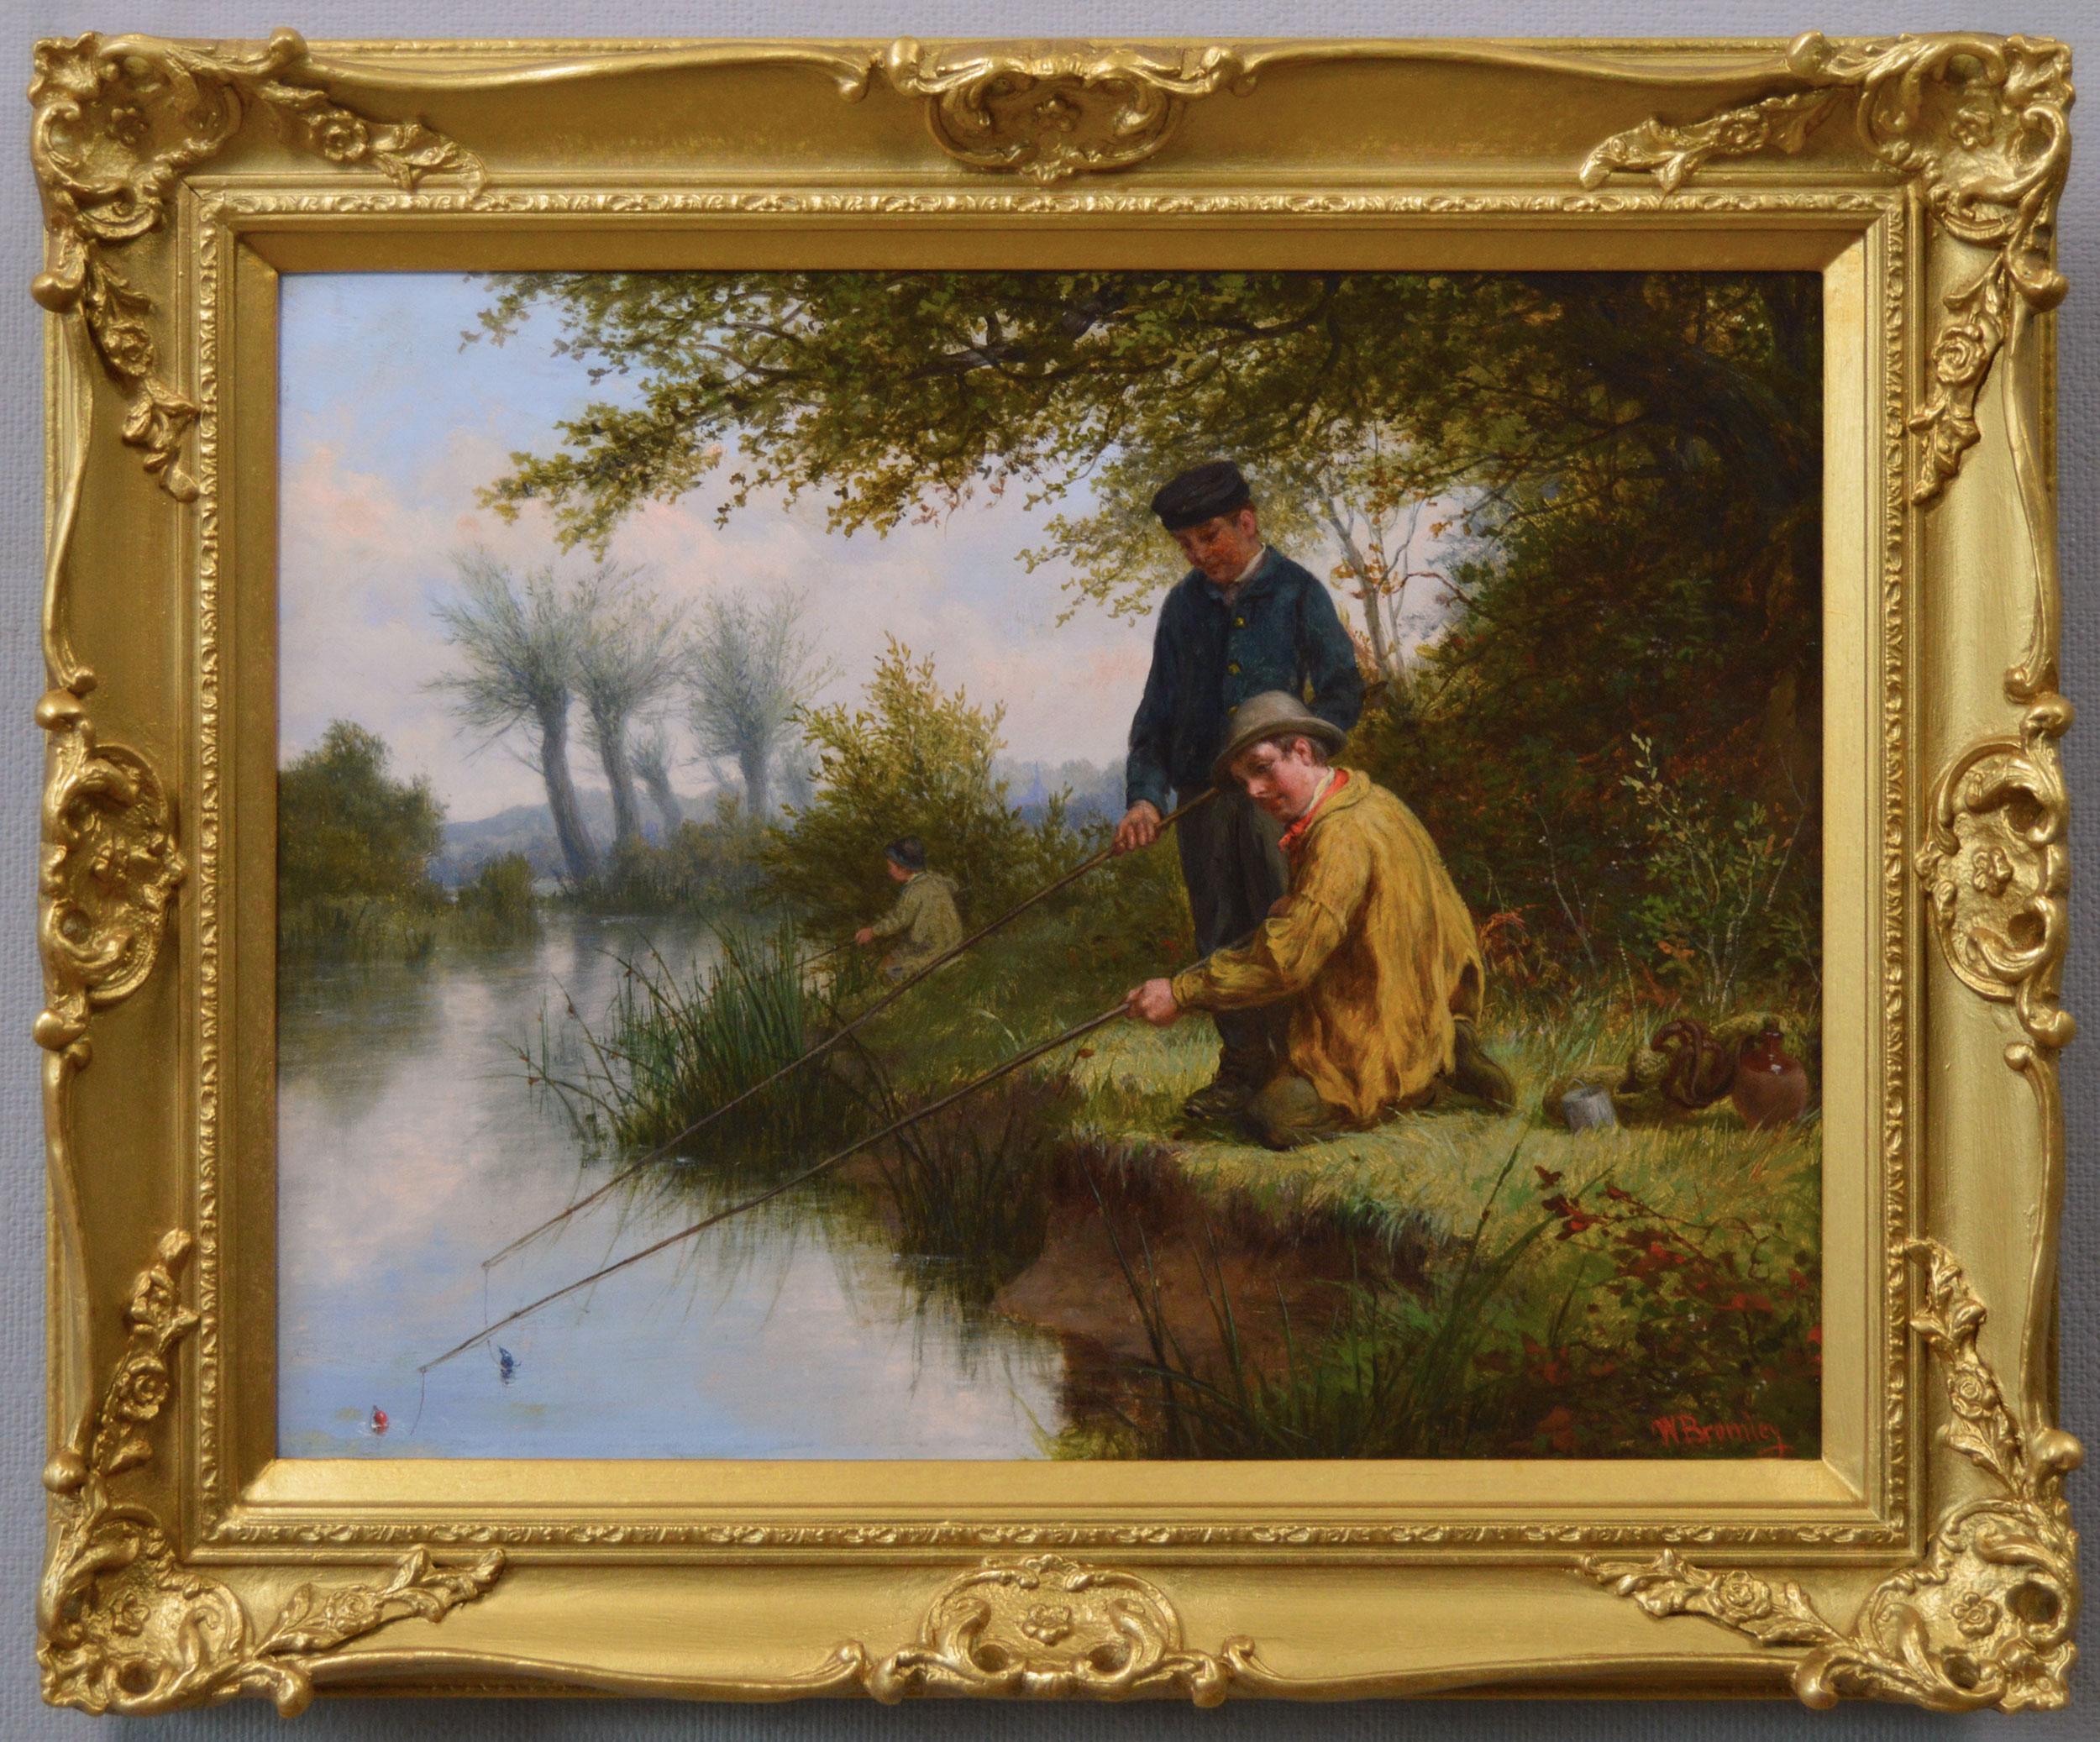 Genre-Landschaftsgemälde des 19. Jahrhunderts, Ölgemälde von drei Jungen, die auf einem Fluss fischen